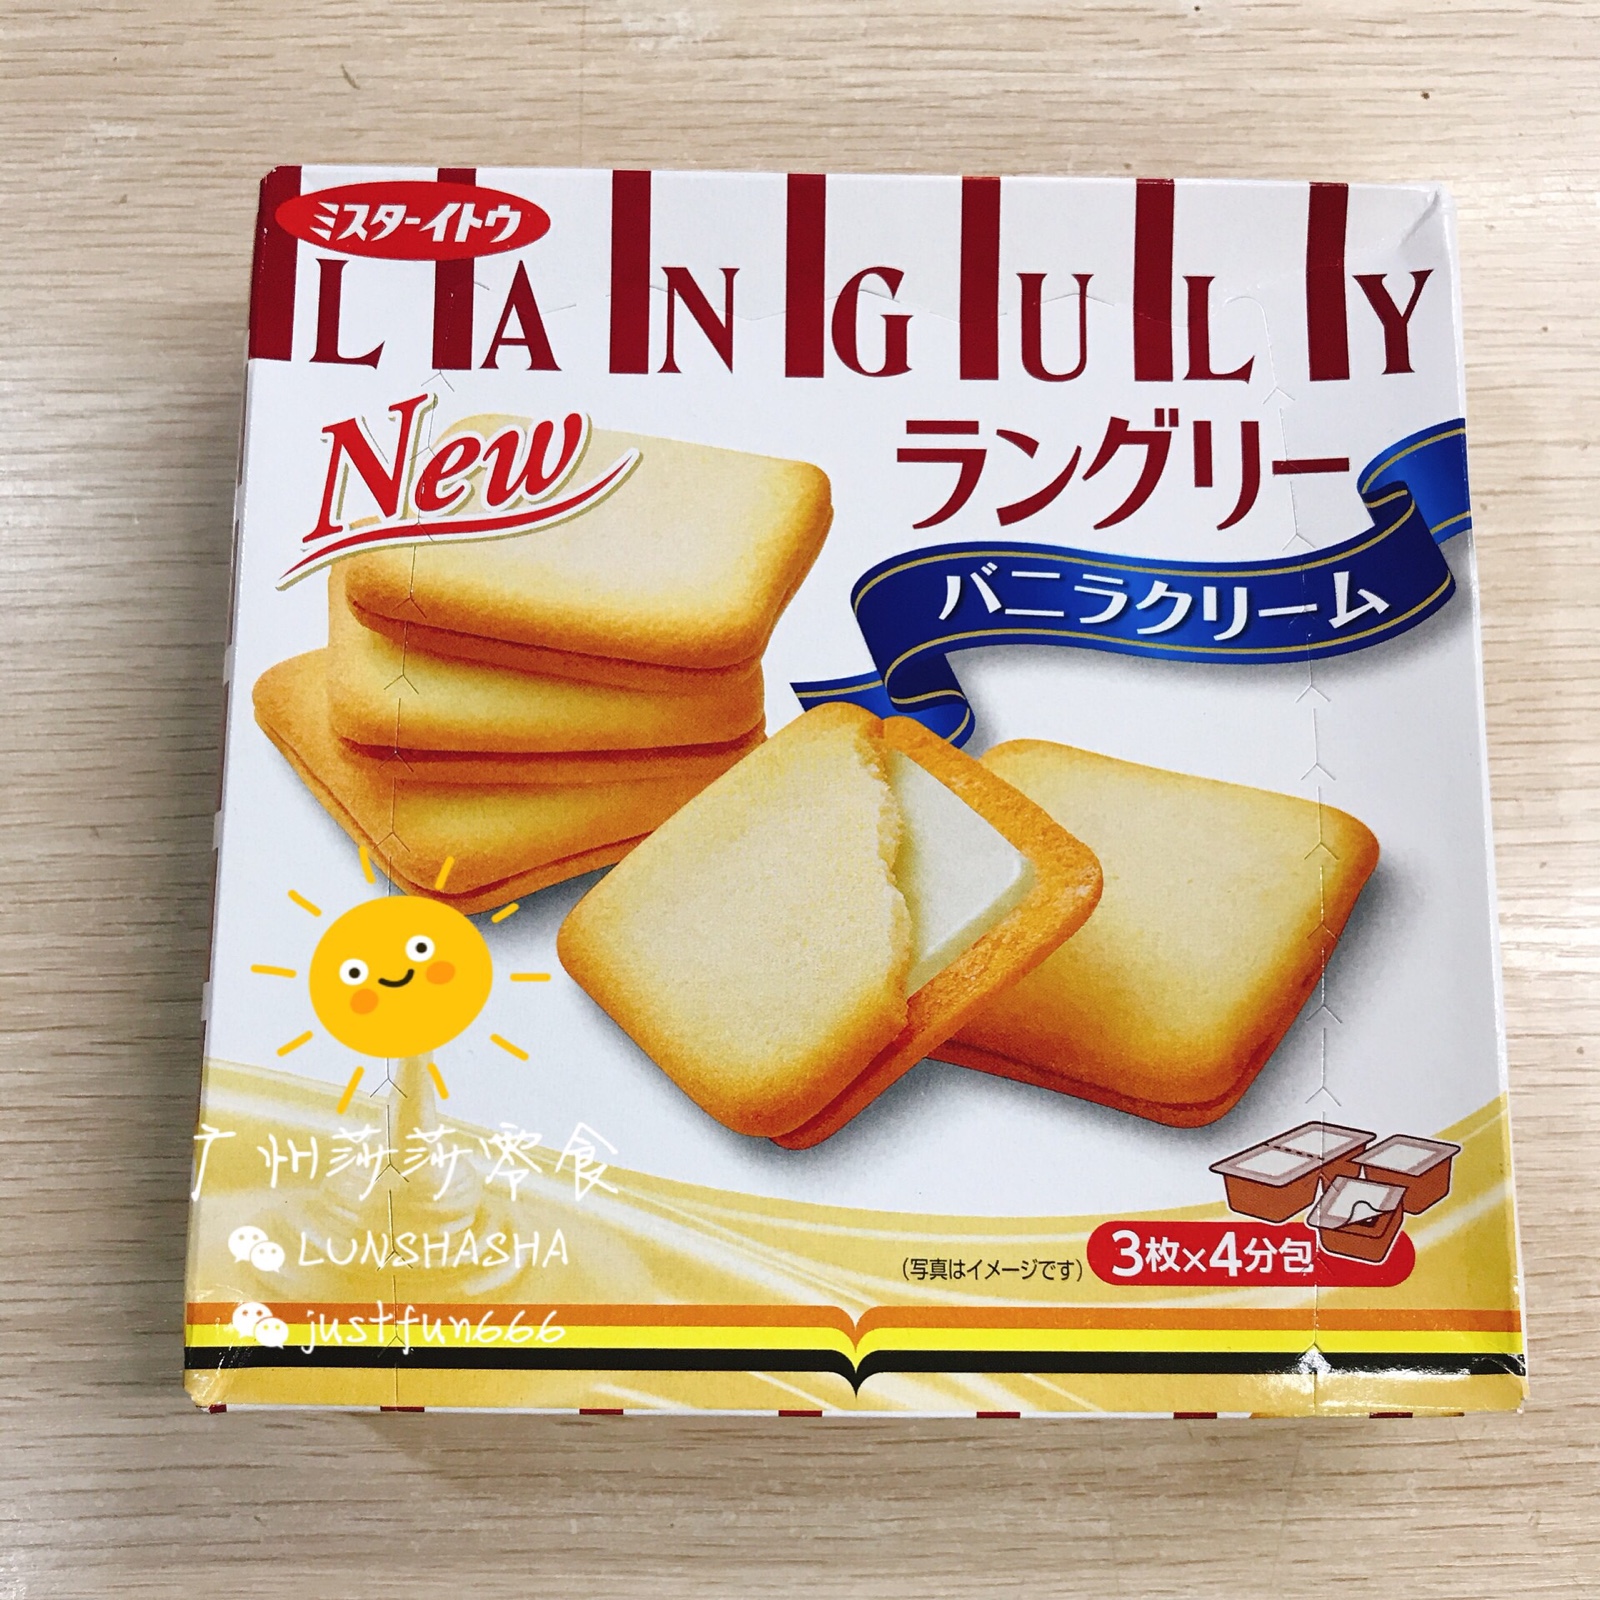 日本进口 依度Languly夹心饼干 原味香草味/抹茶味休闲零食 129g